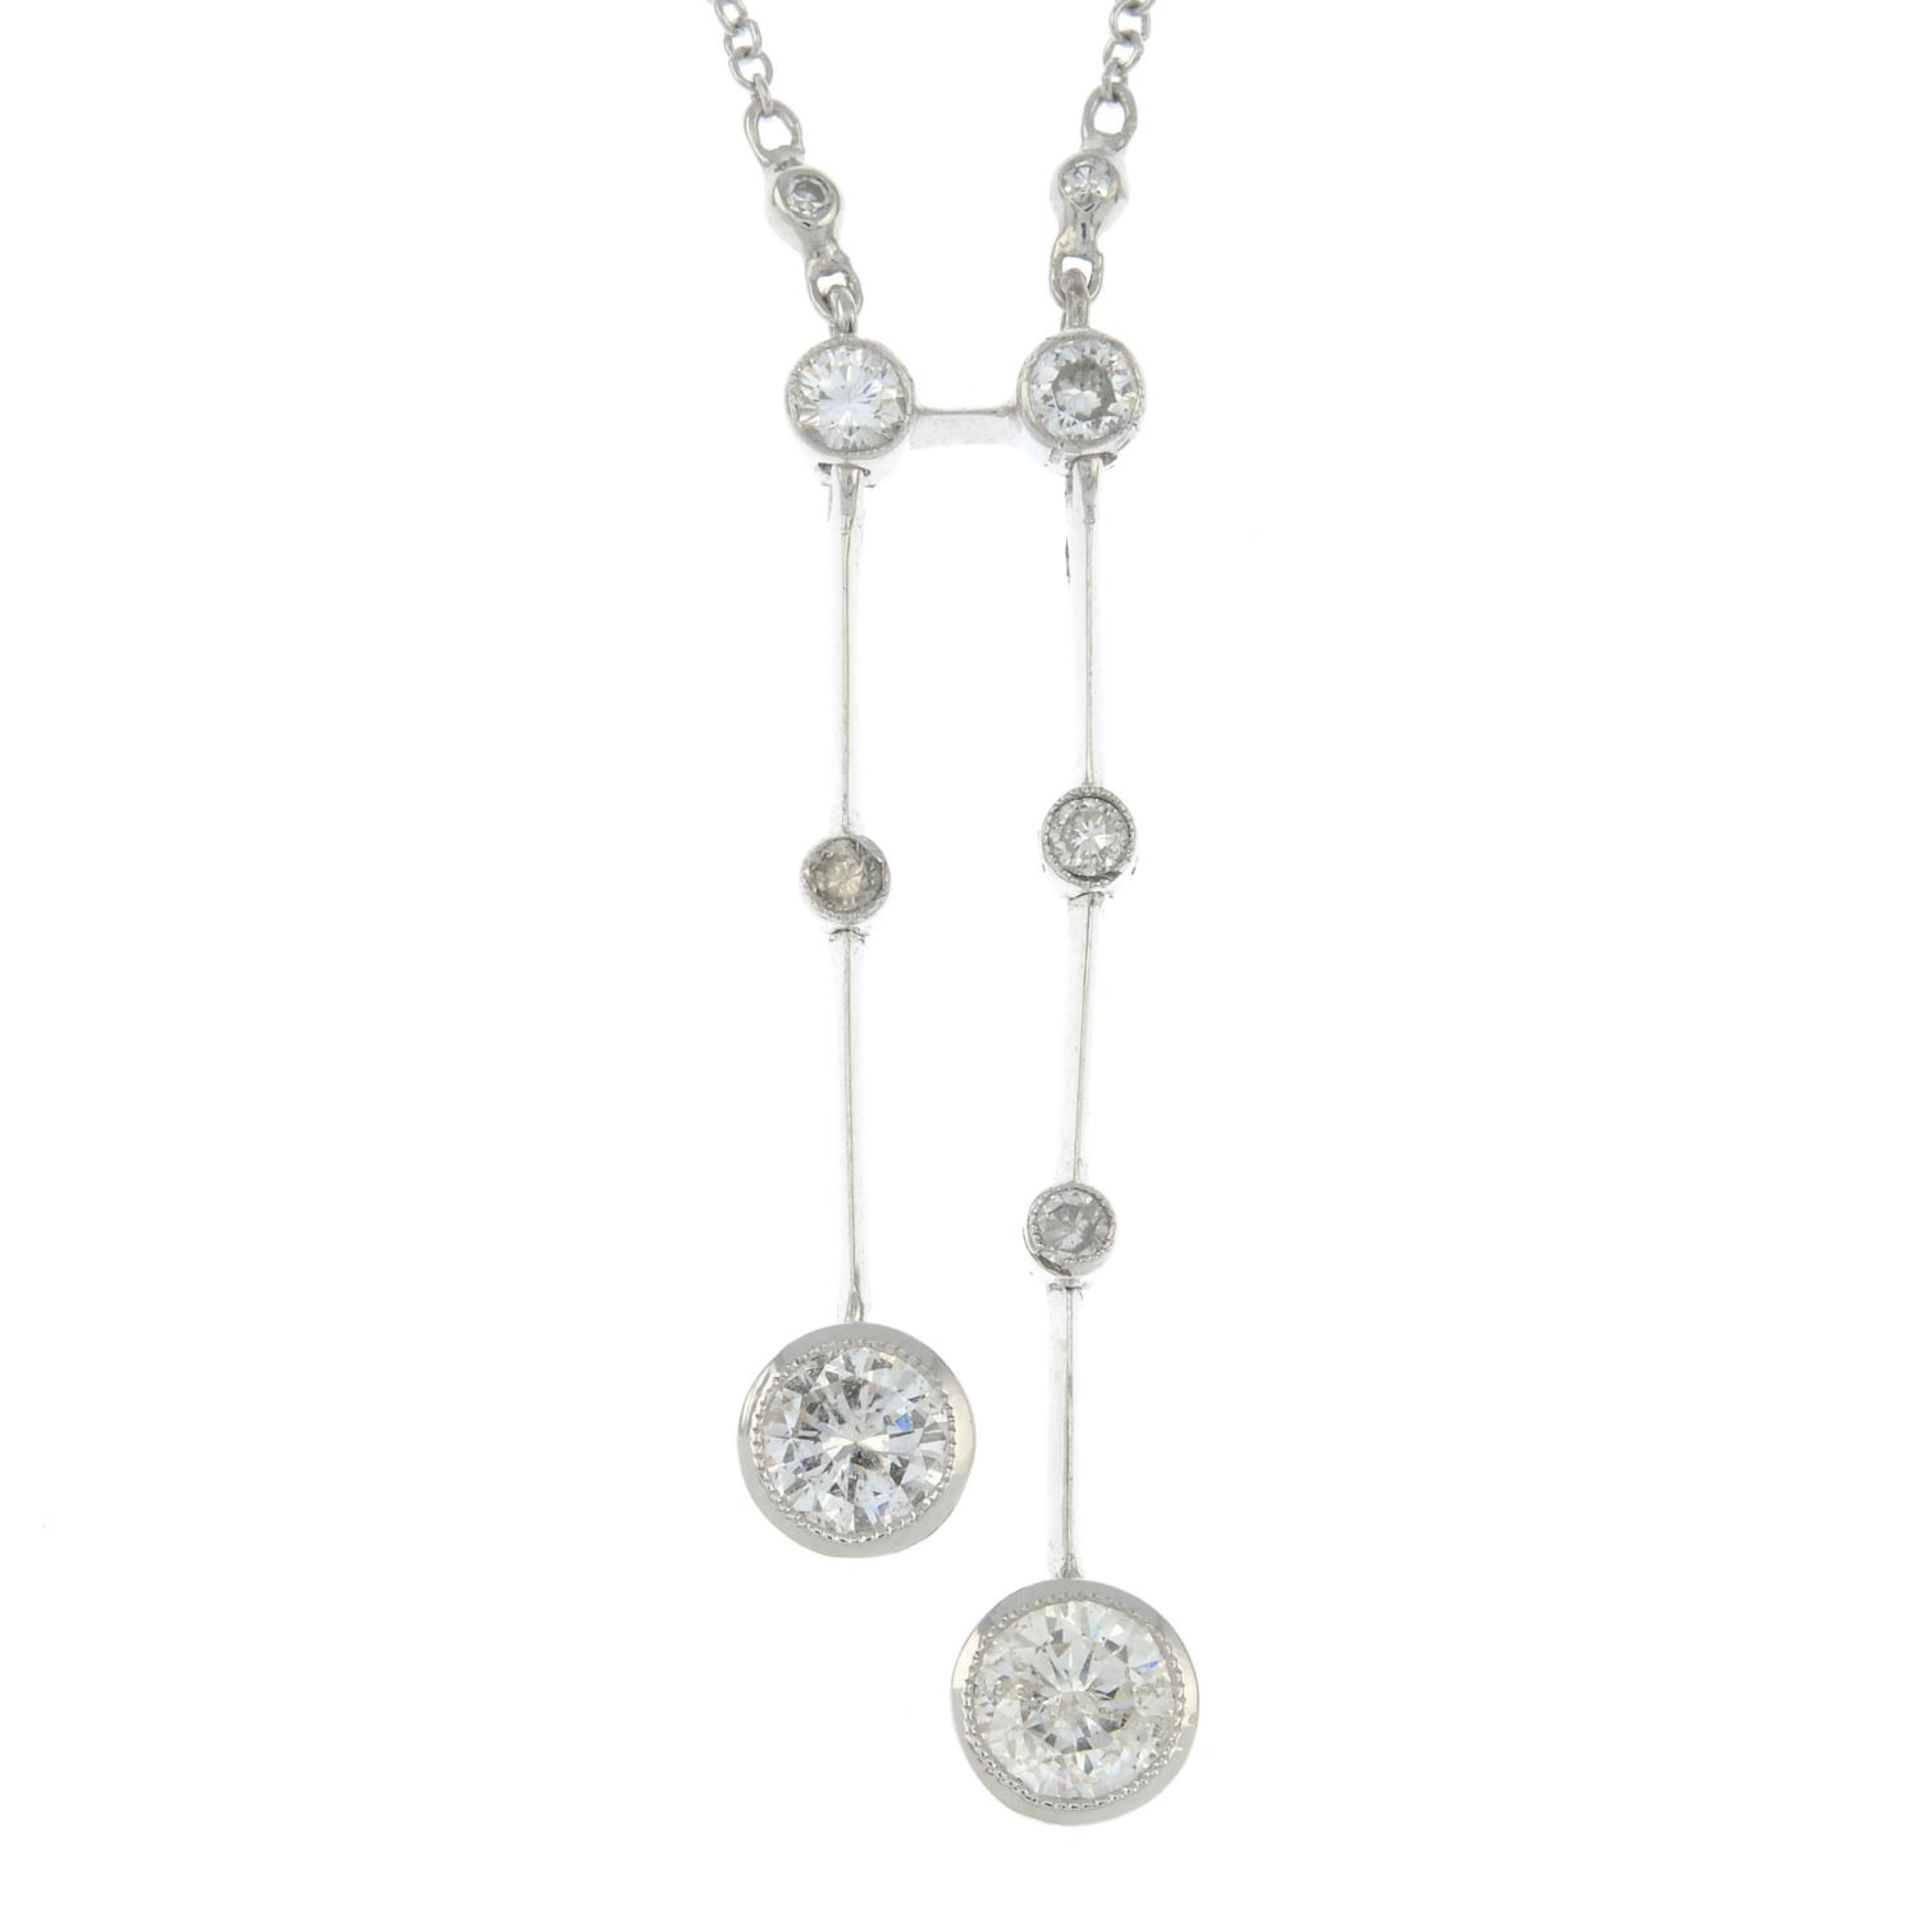 A brilliant-cut diamond negligee pendant,